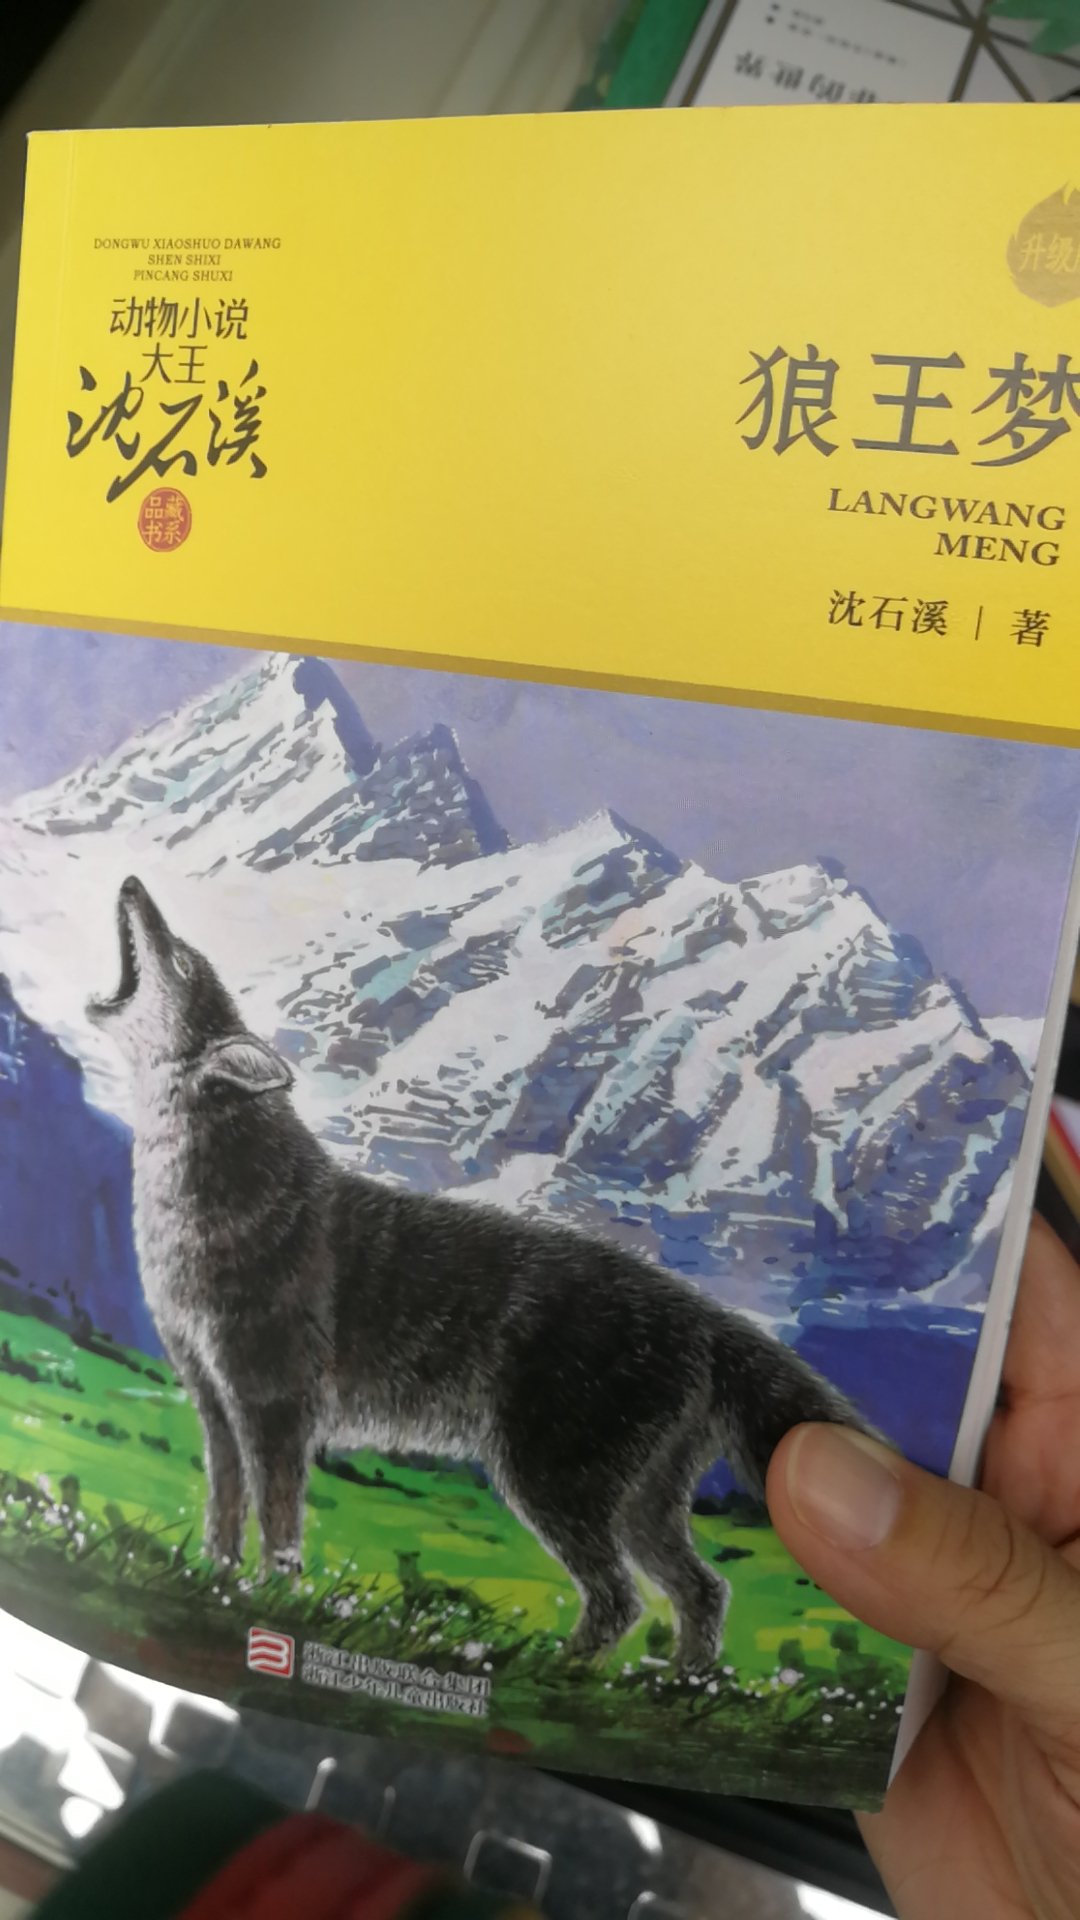 沈石溪先生的动物小说狼王梦非常值得推荐，嗯，学校老师也非常喜欢推荐这沈石溪先生的作品，我女儿也非常喜欢